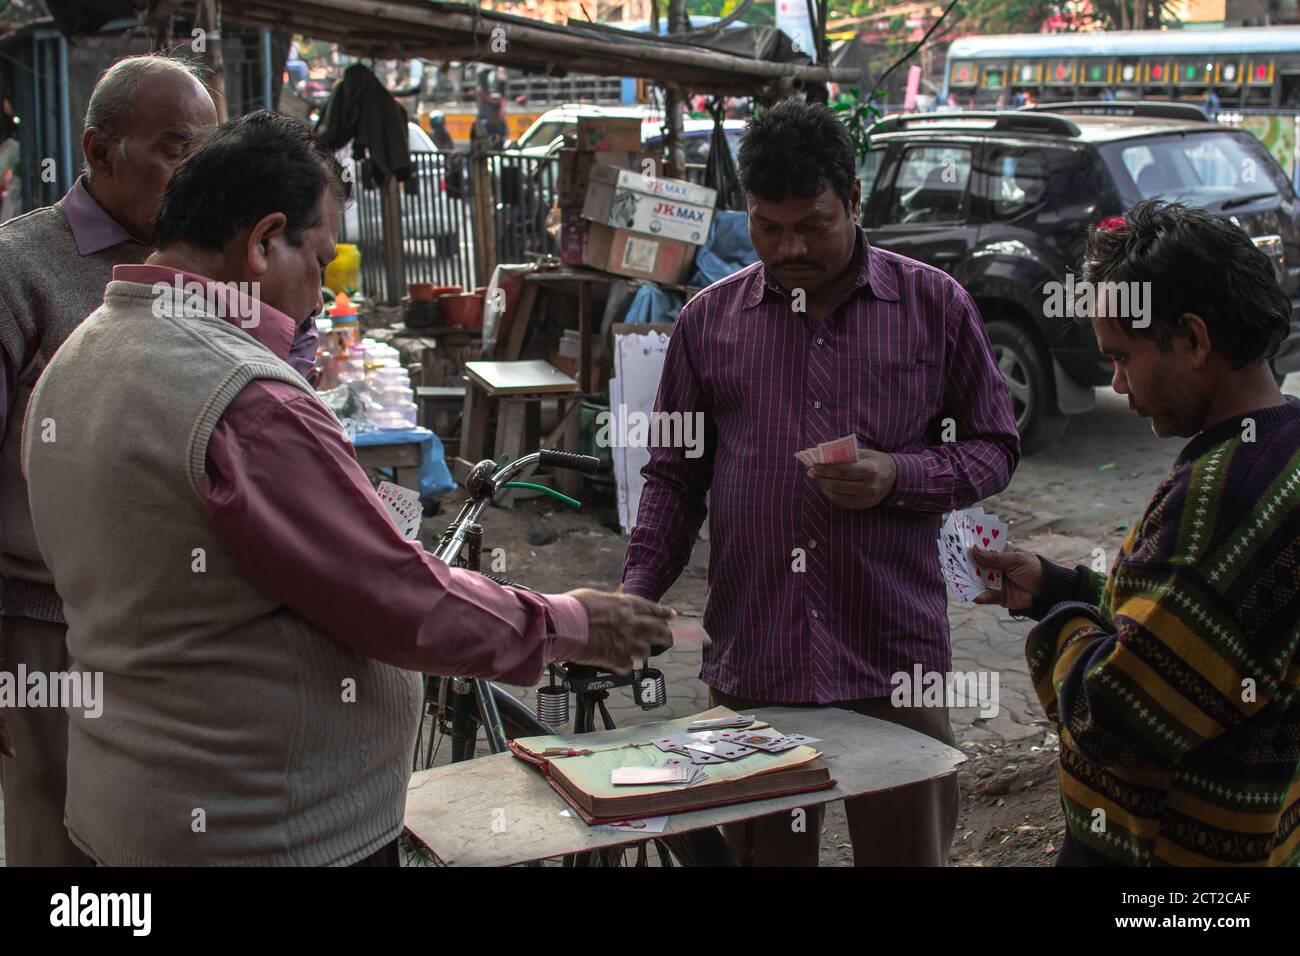 Kolkata, Indien - 1. Februar 2020: Vier nicht identifizierte Männer in bunten Hemden spielen am 1. Dezember 2020 in Kolkata, Indien, Karten in den örtlichen Straßen Stockfoto